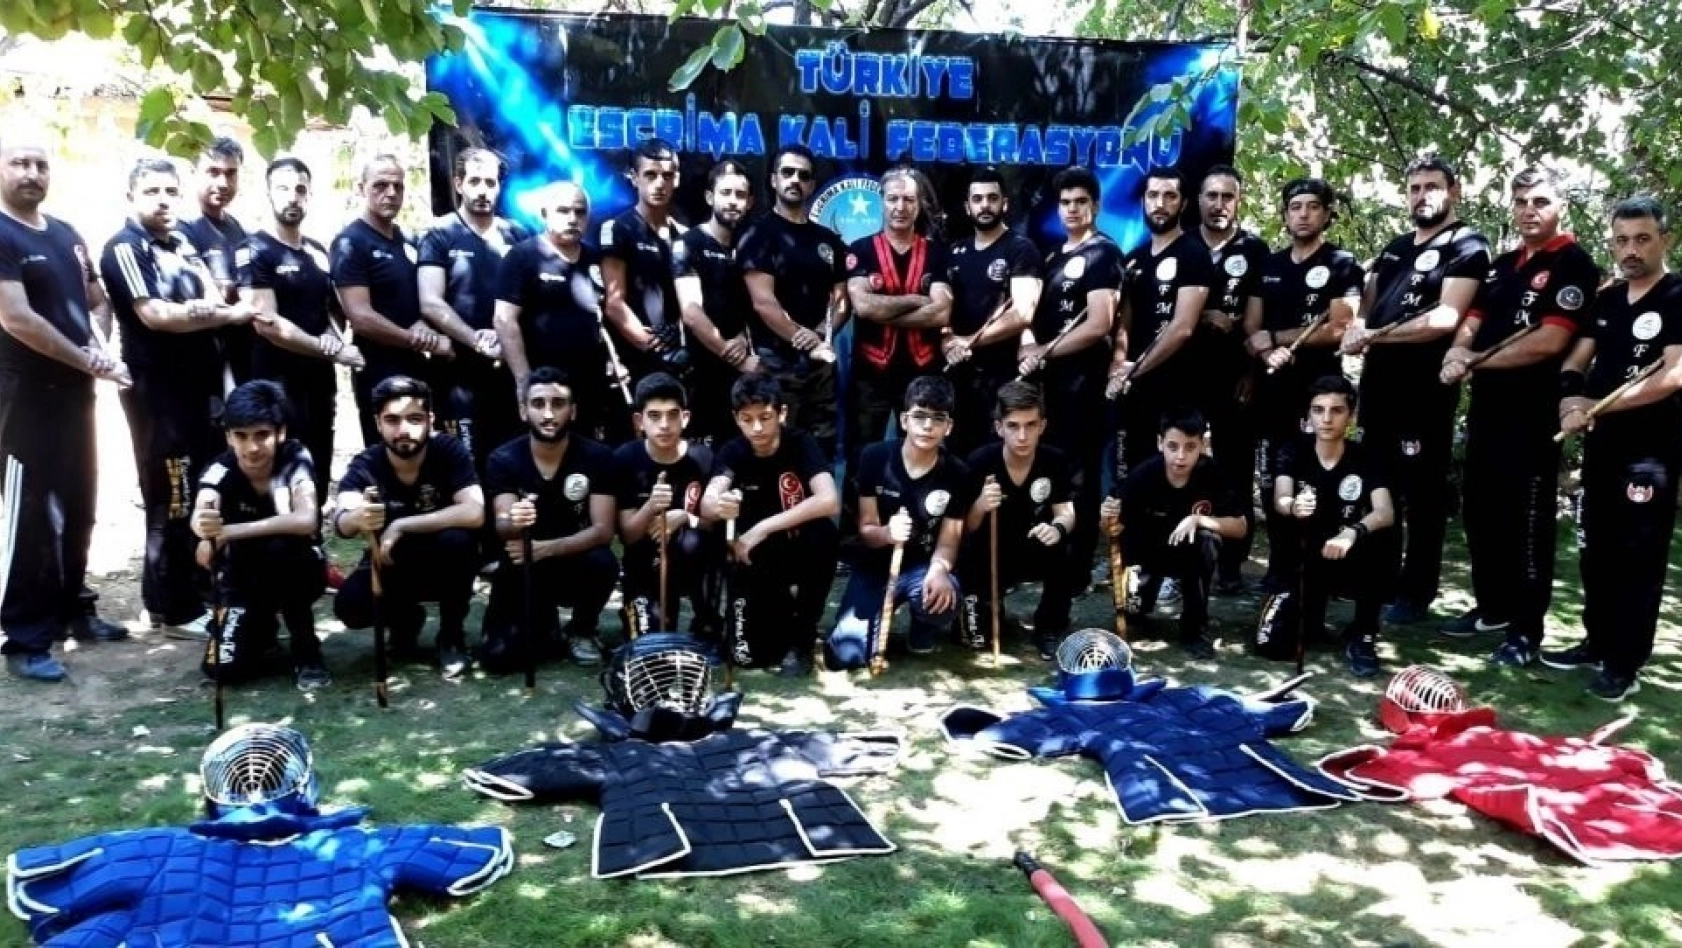 Türkiye Escrima Kali Federasyonu Malatya'da toplandı 